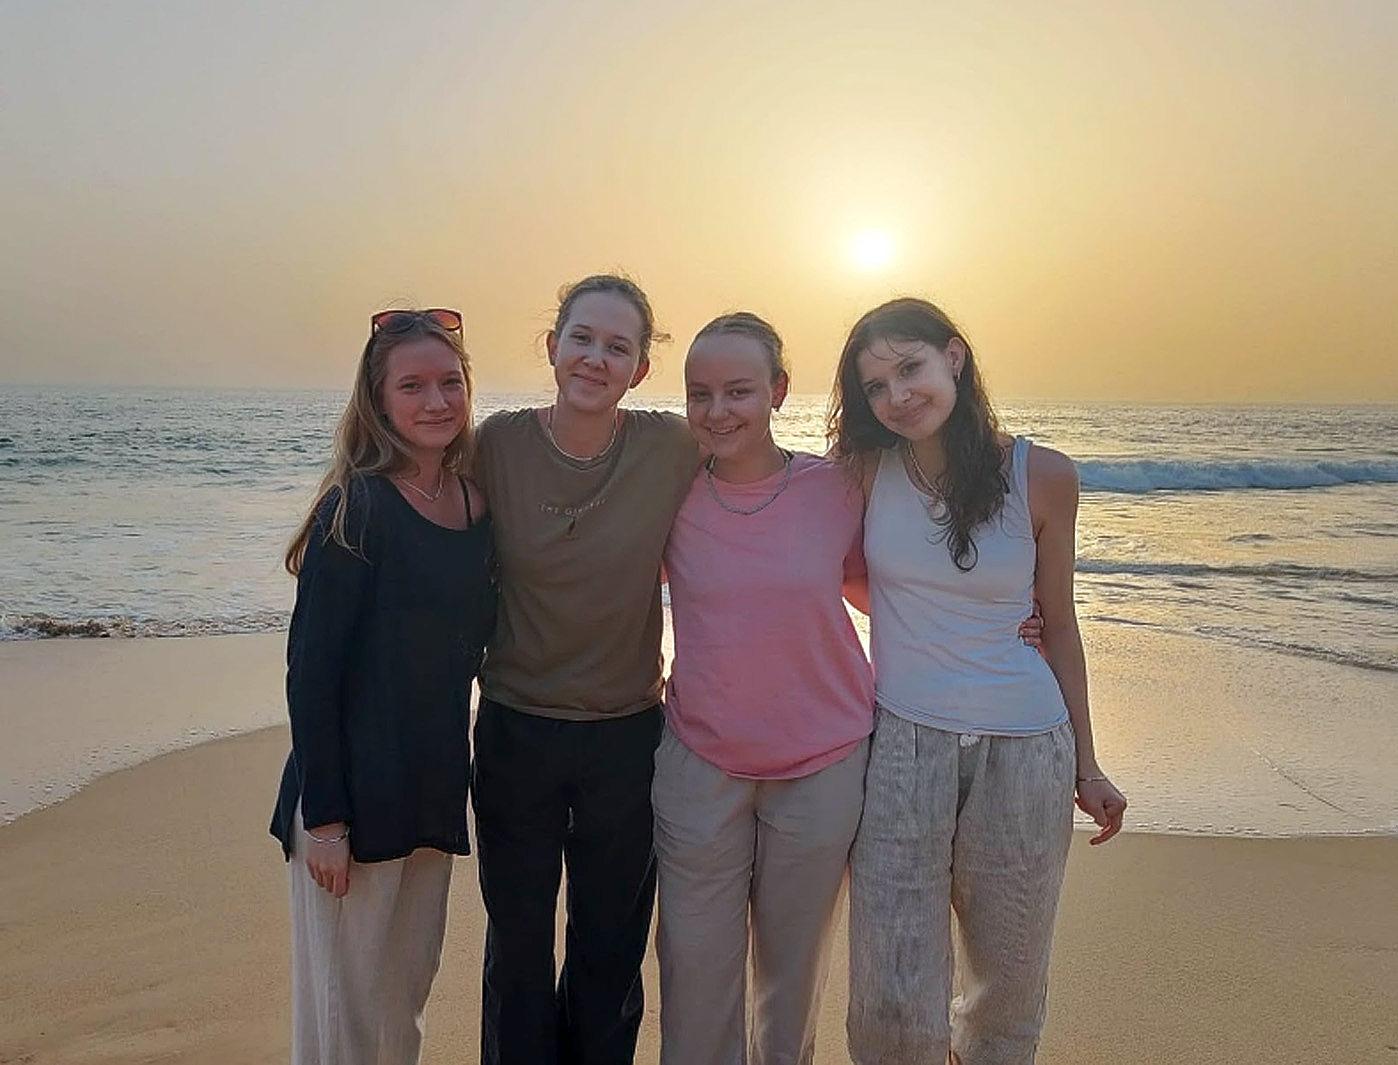 fyra unga kvinnor på en strand, fotade mot en solnedgång